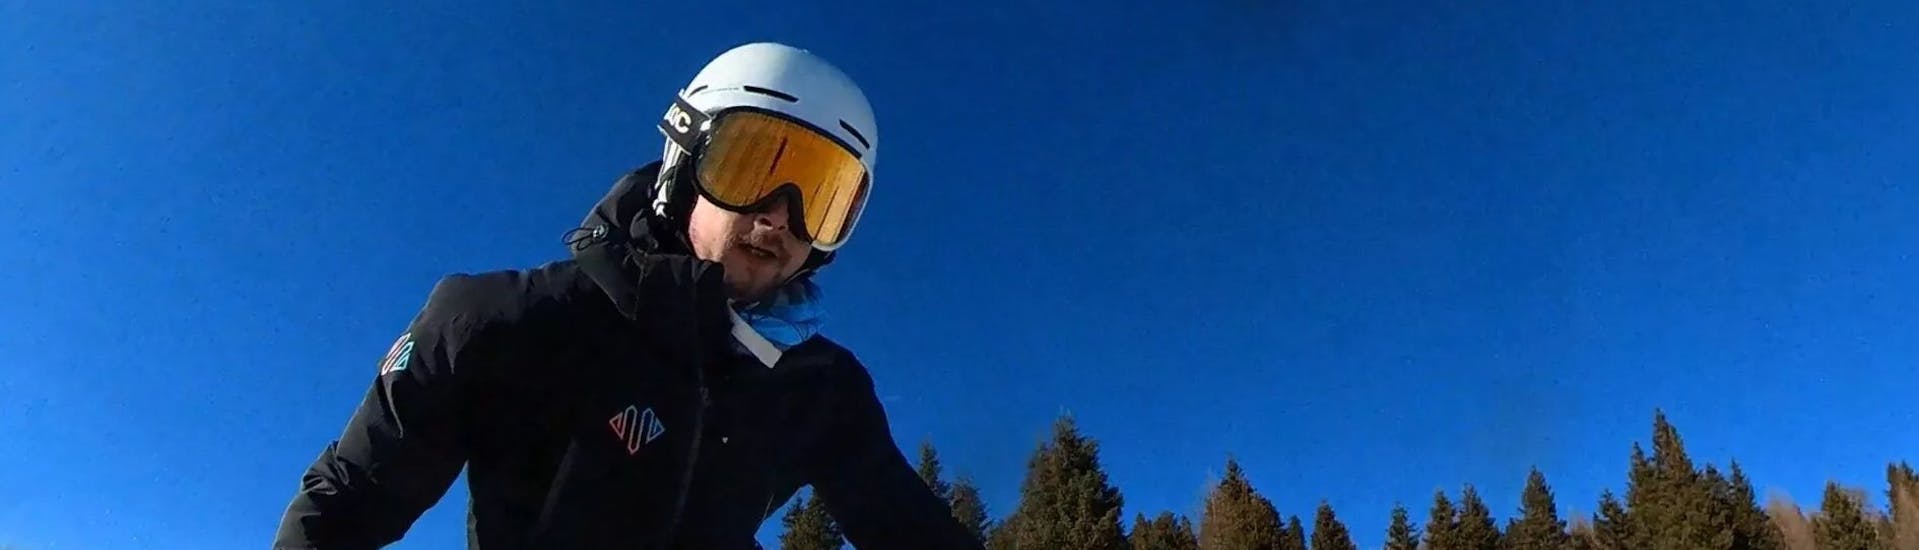 Cours de ski Adultes dès 16 ans - Expérimentés.